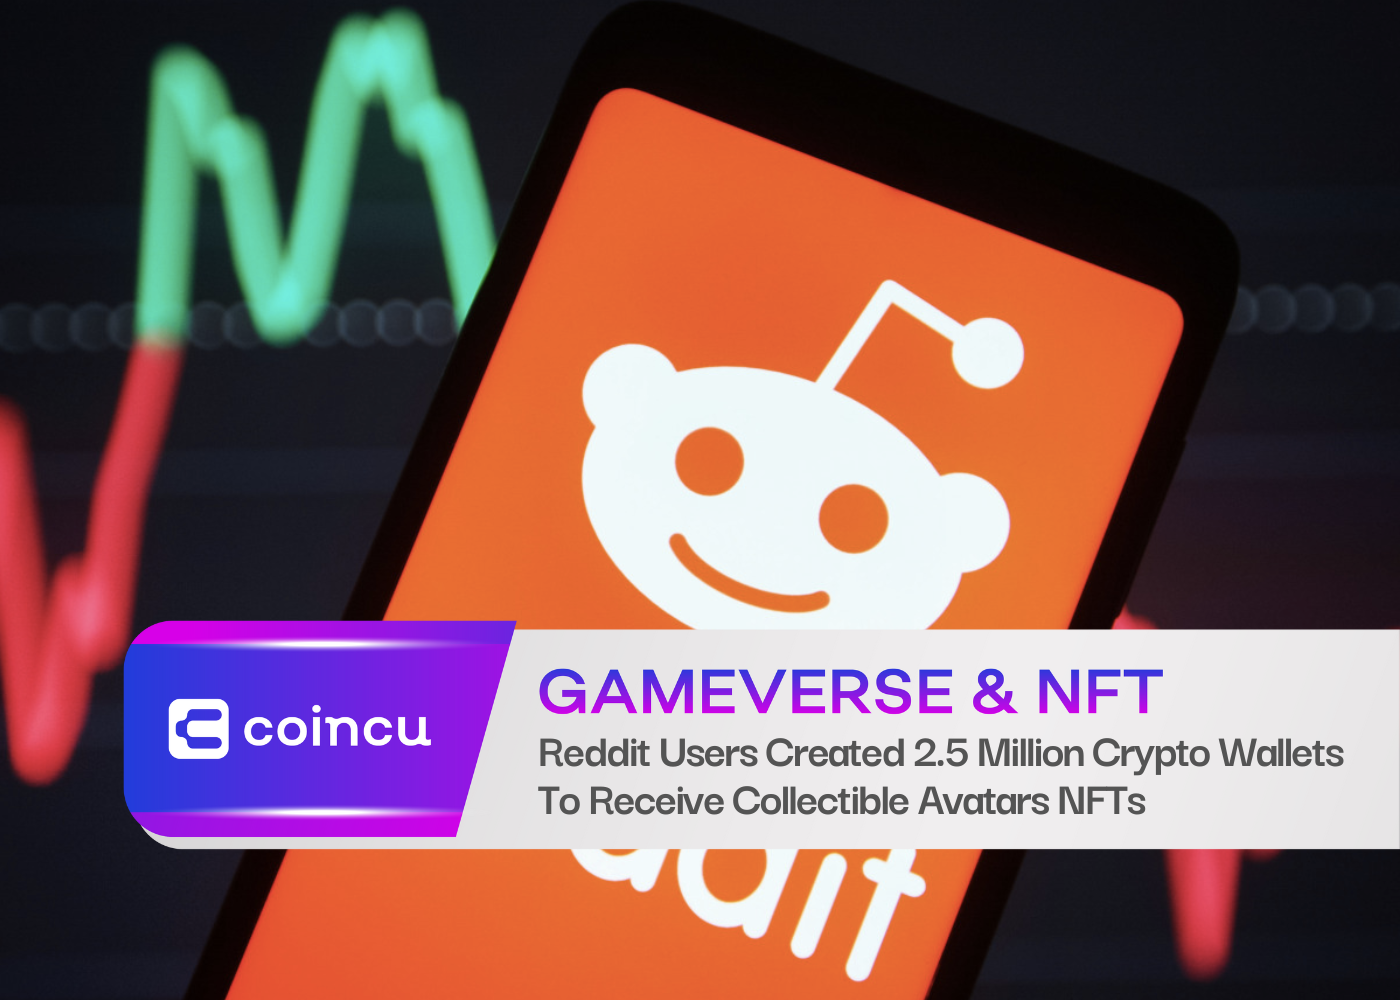 Reddit-Benutzer haben 2.5 Millionen Krypto-Wallets erstellt, um Sammler-Avatar-NFTs zu erhalten